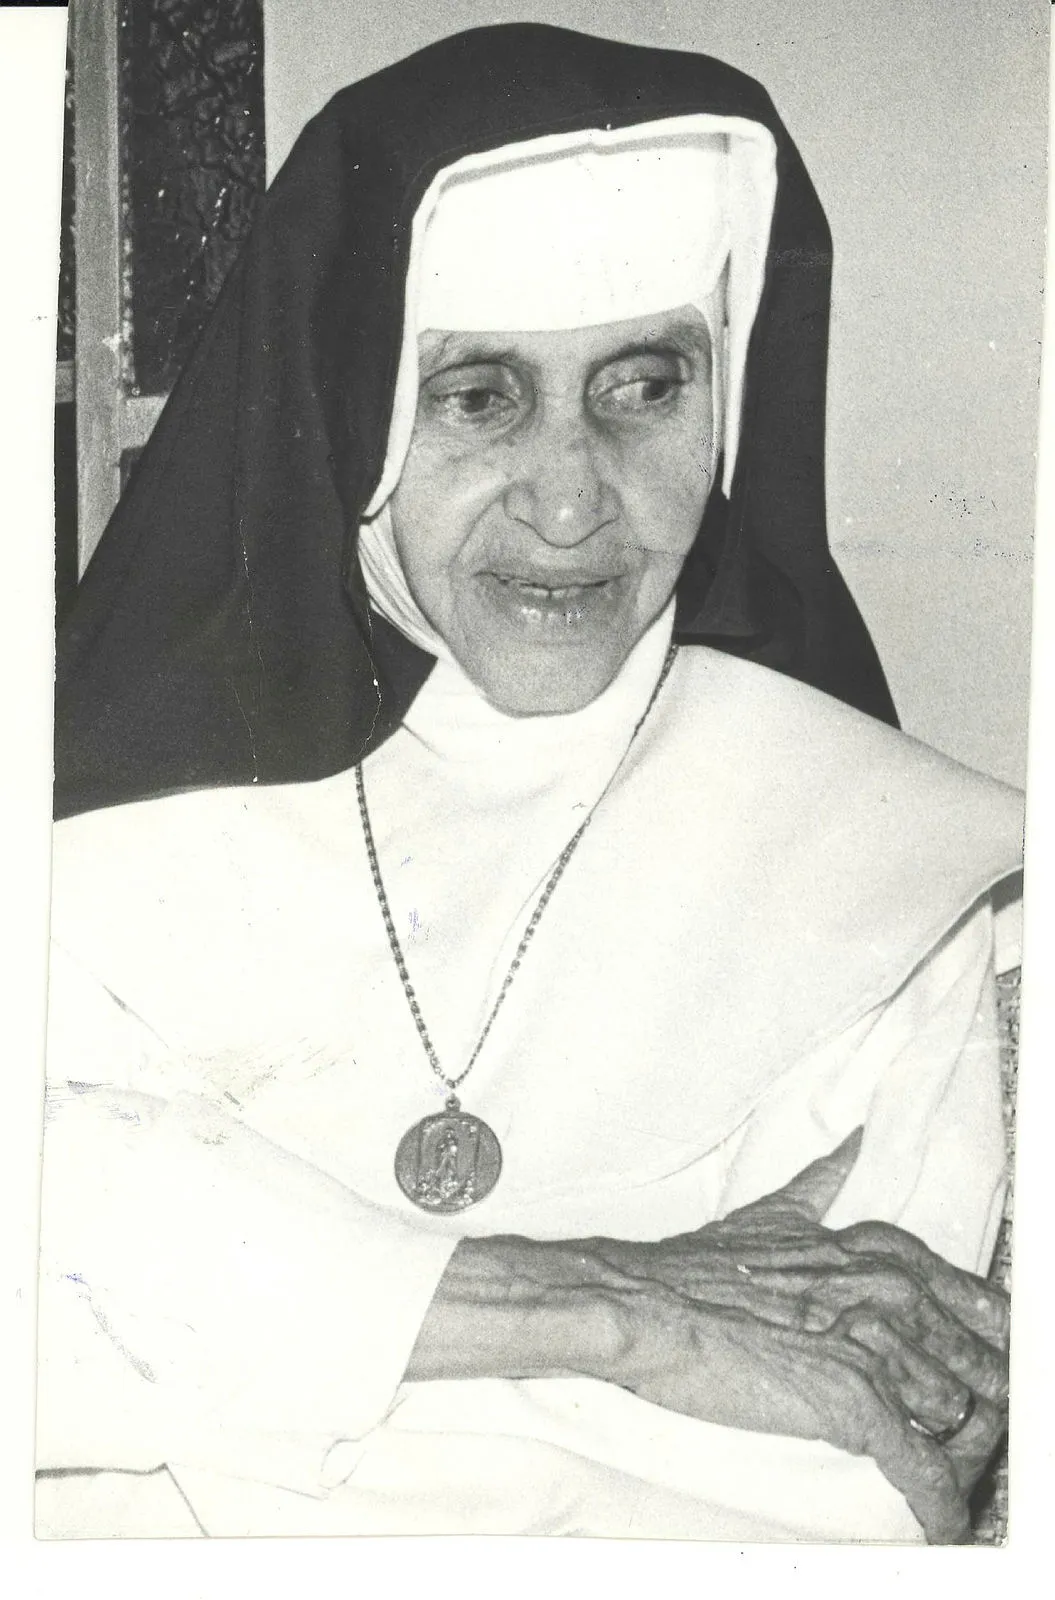 Data comemora dia que Irmã Dulce será proclamada oficialmente como santa